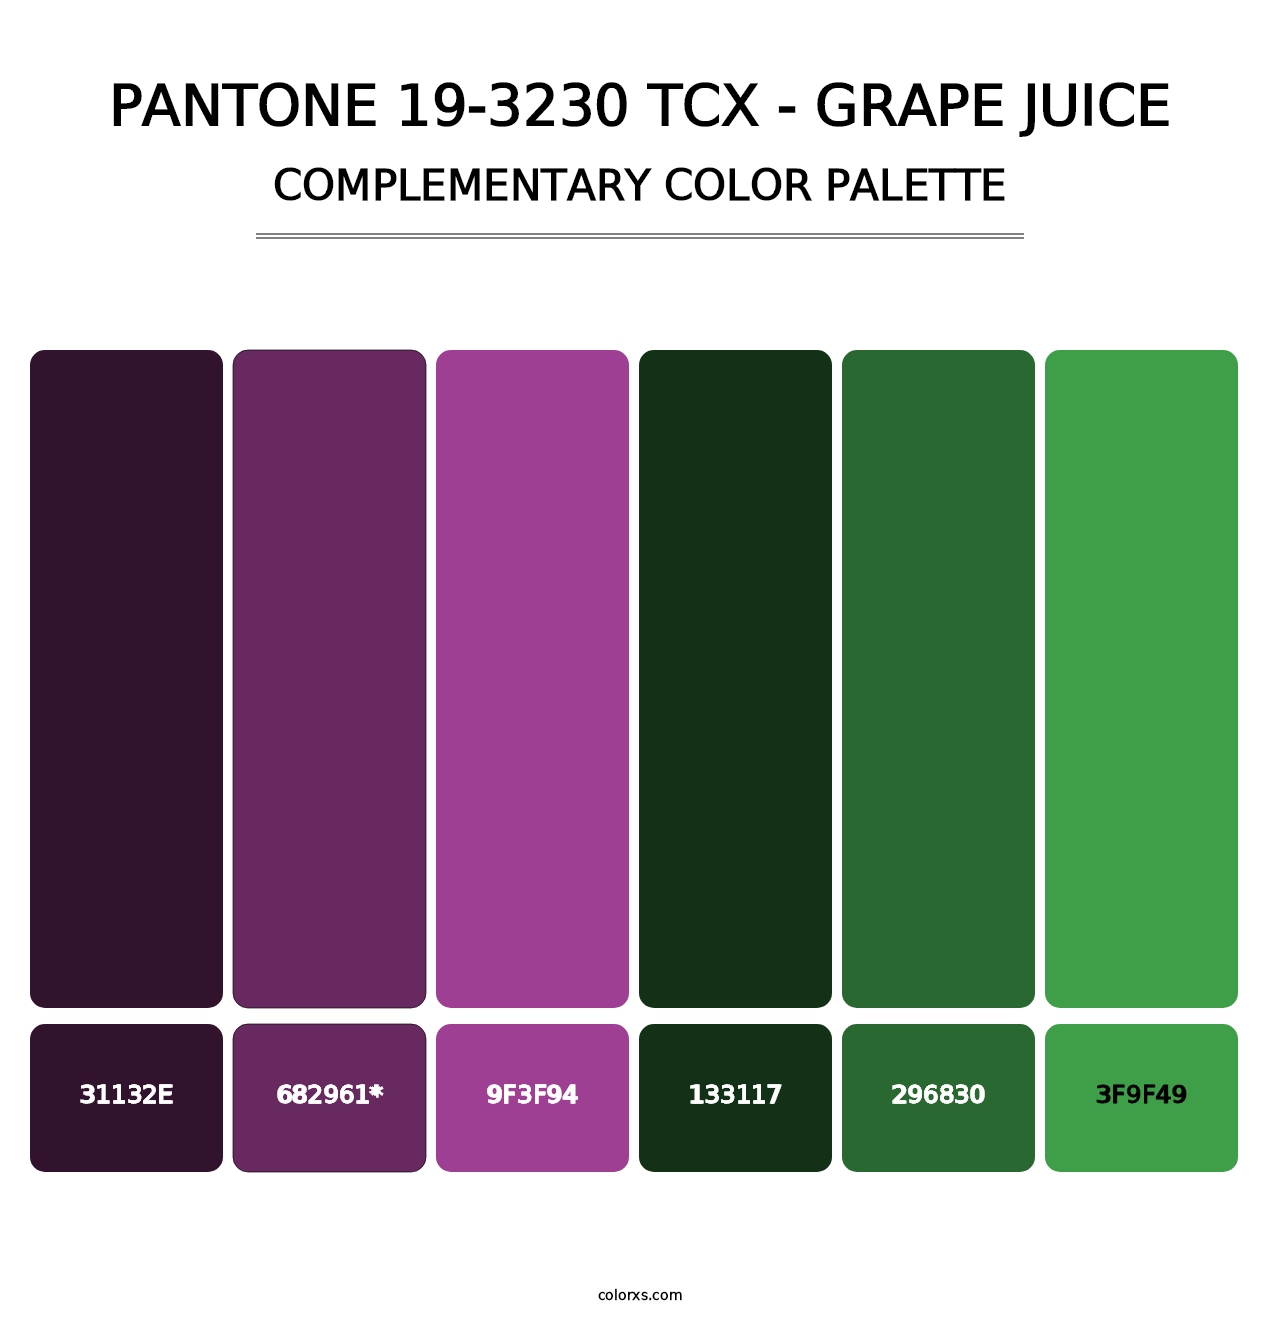 PANTONE 19-3230 TCX - Grape Juice - Complementary Color Palette